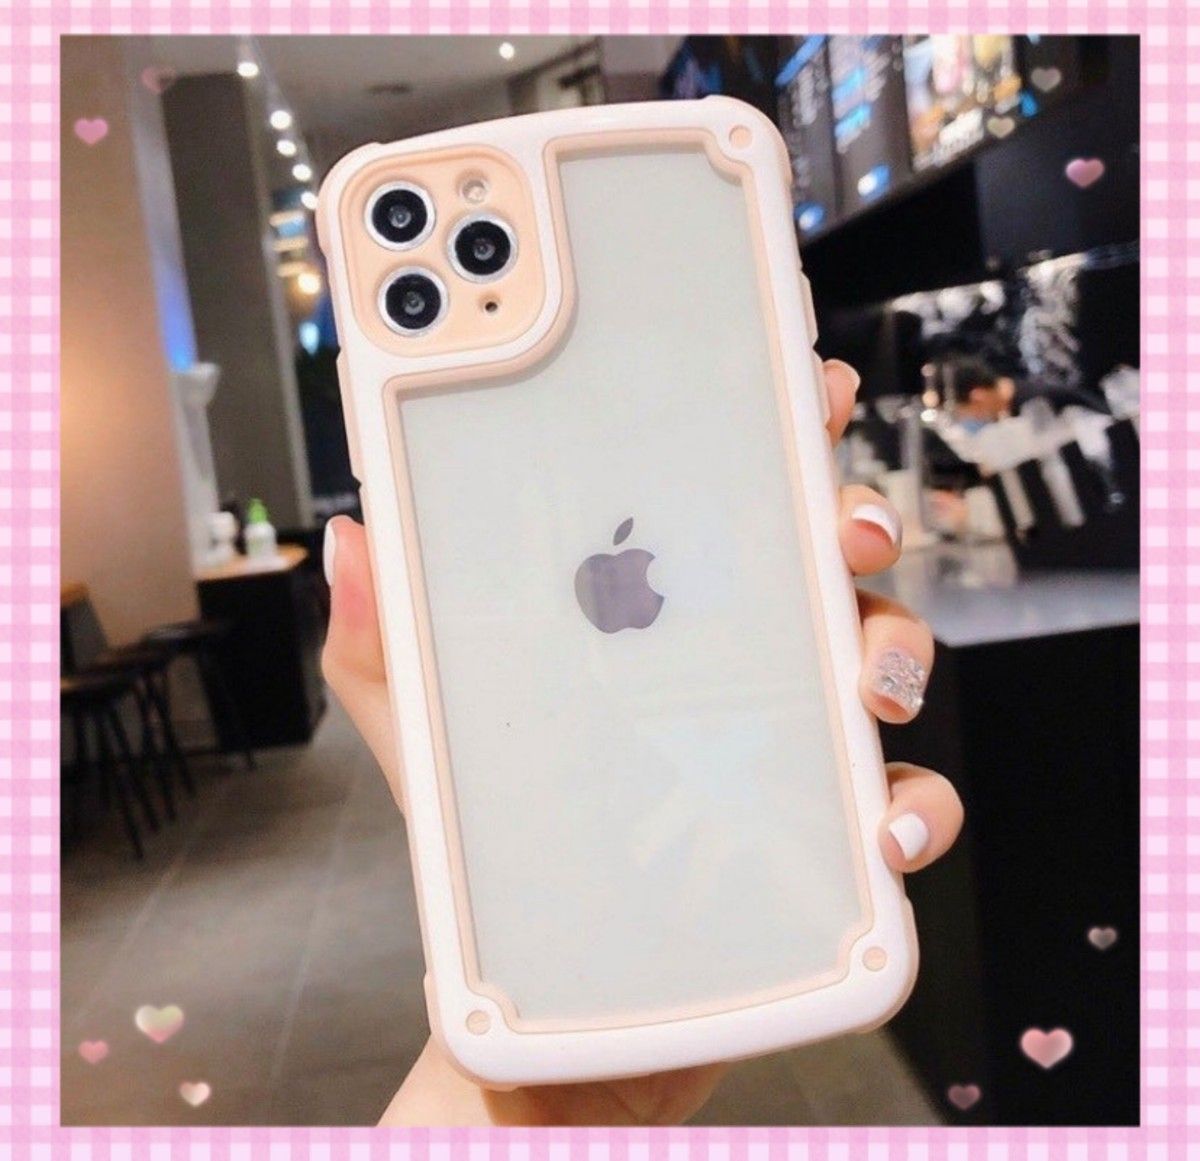 即決 送料無料 【iPhone11】ピンク iPhoneケース 大人気 シンプル フレーム スマホケース iPhone かわいい 